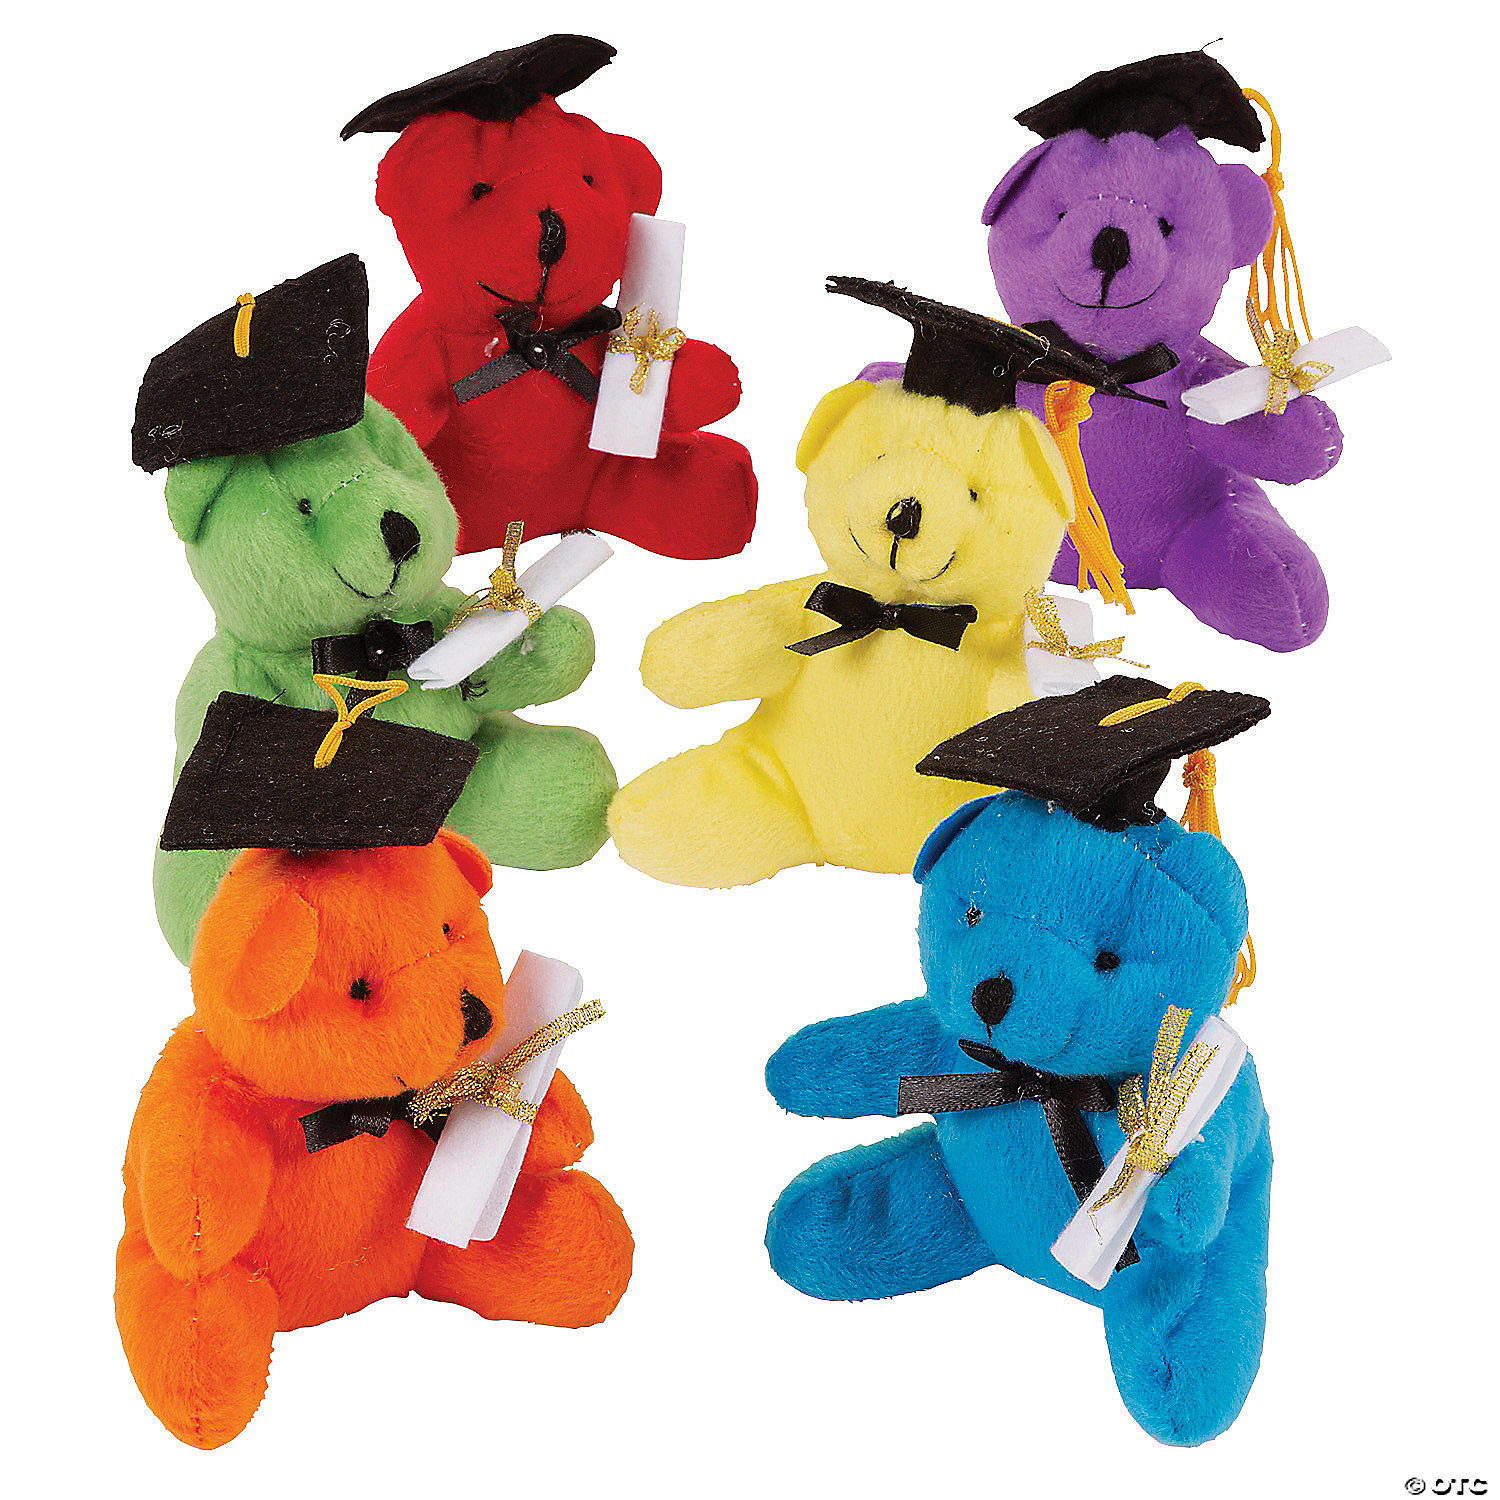 graduation teddy bears